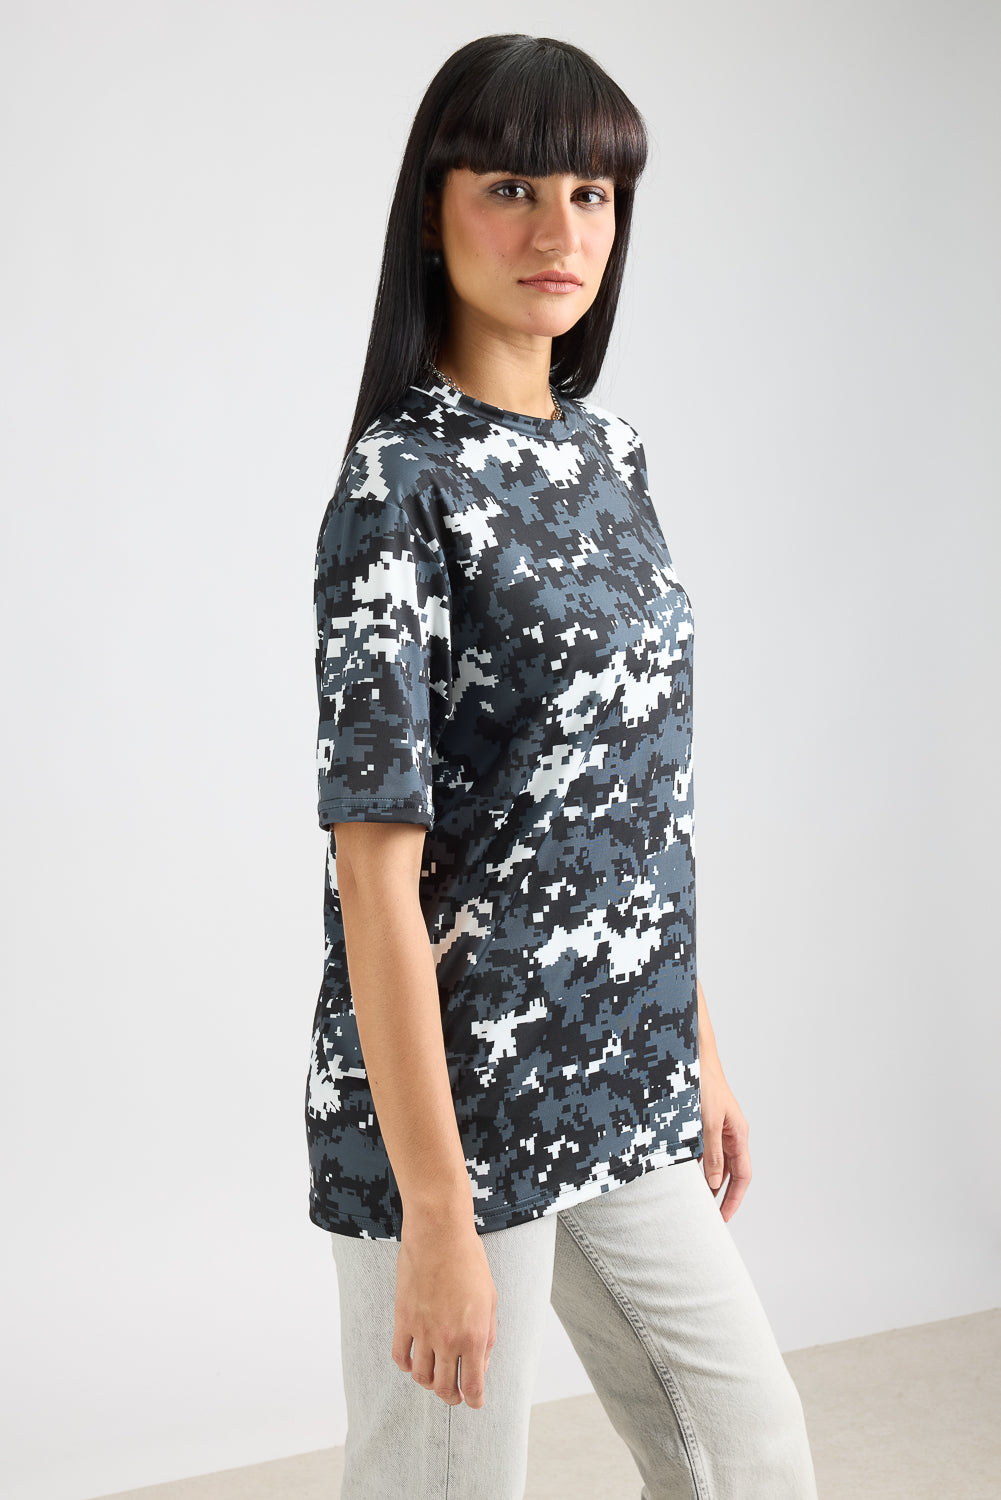 AOP Women's T-shirt - Pixelated